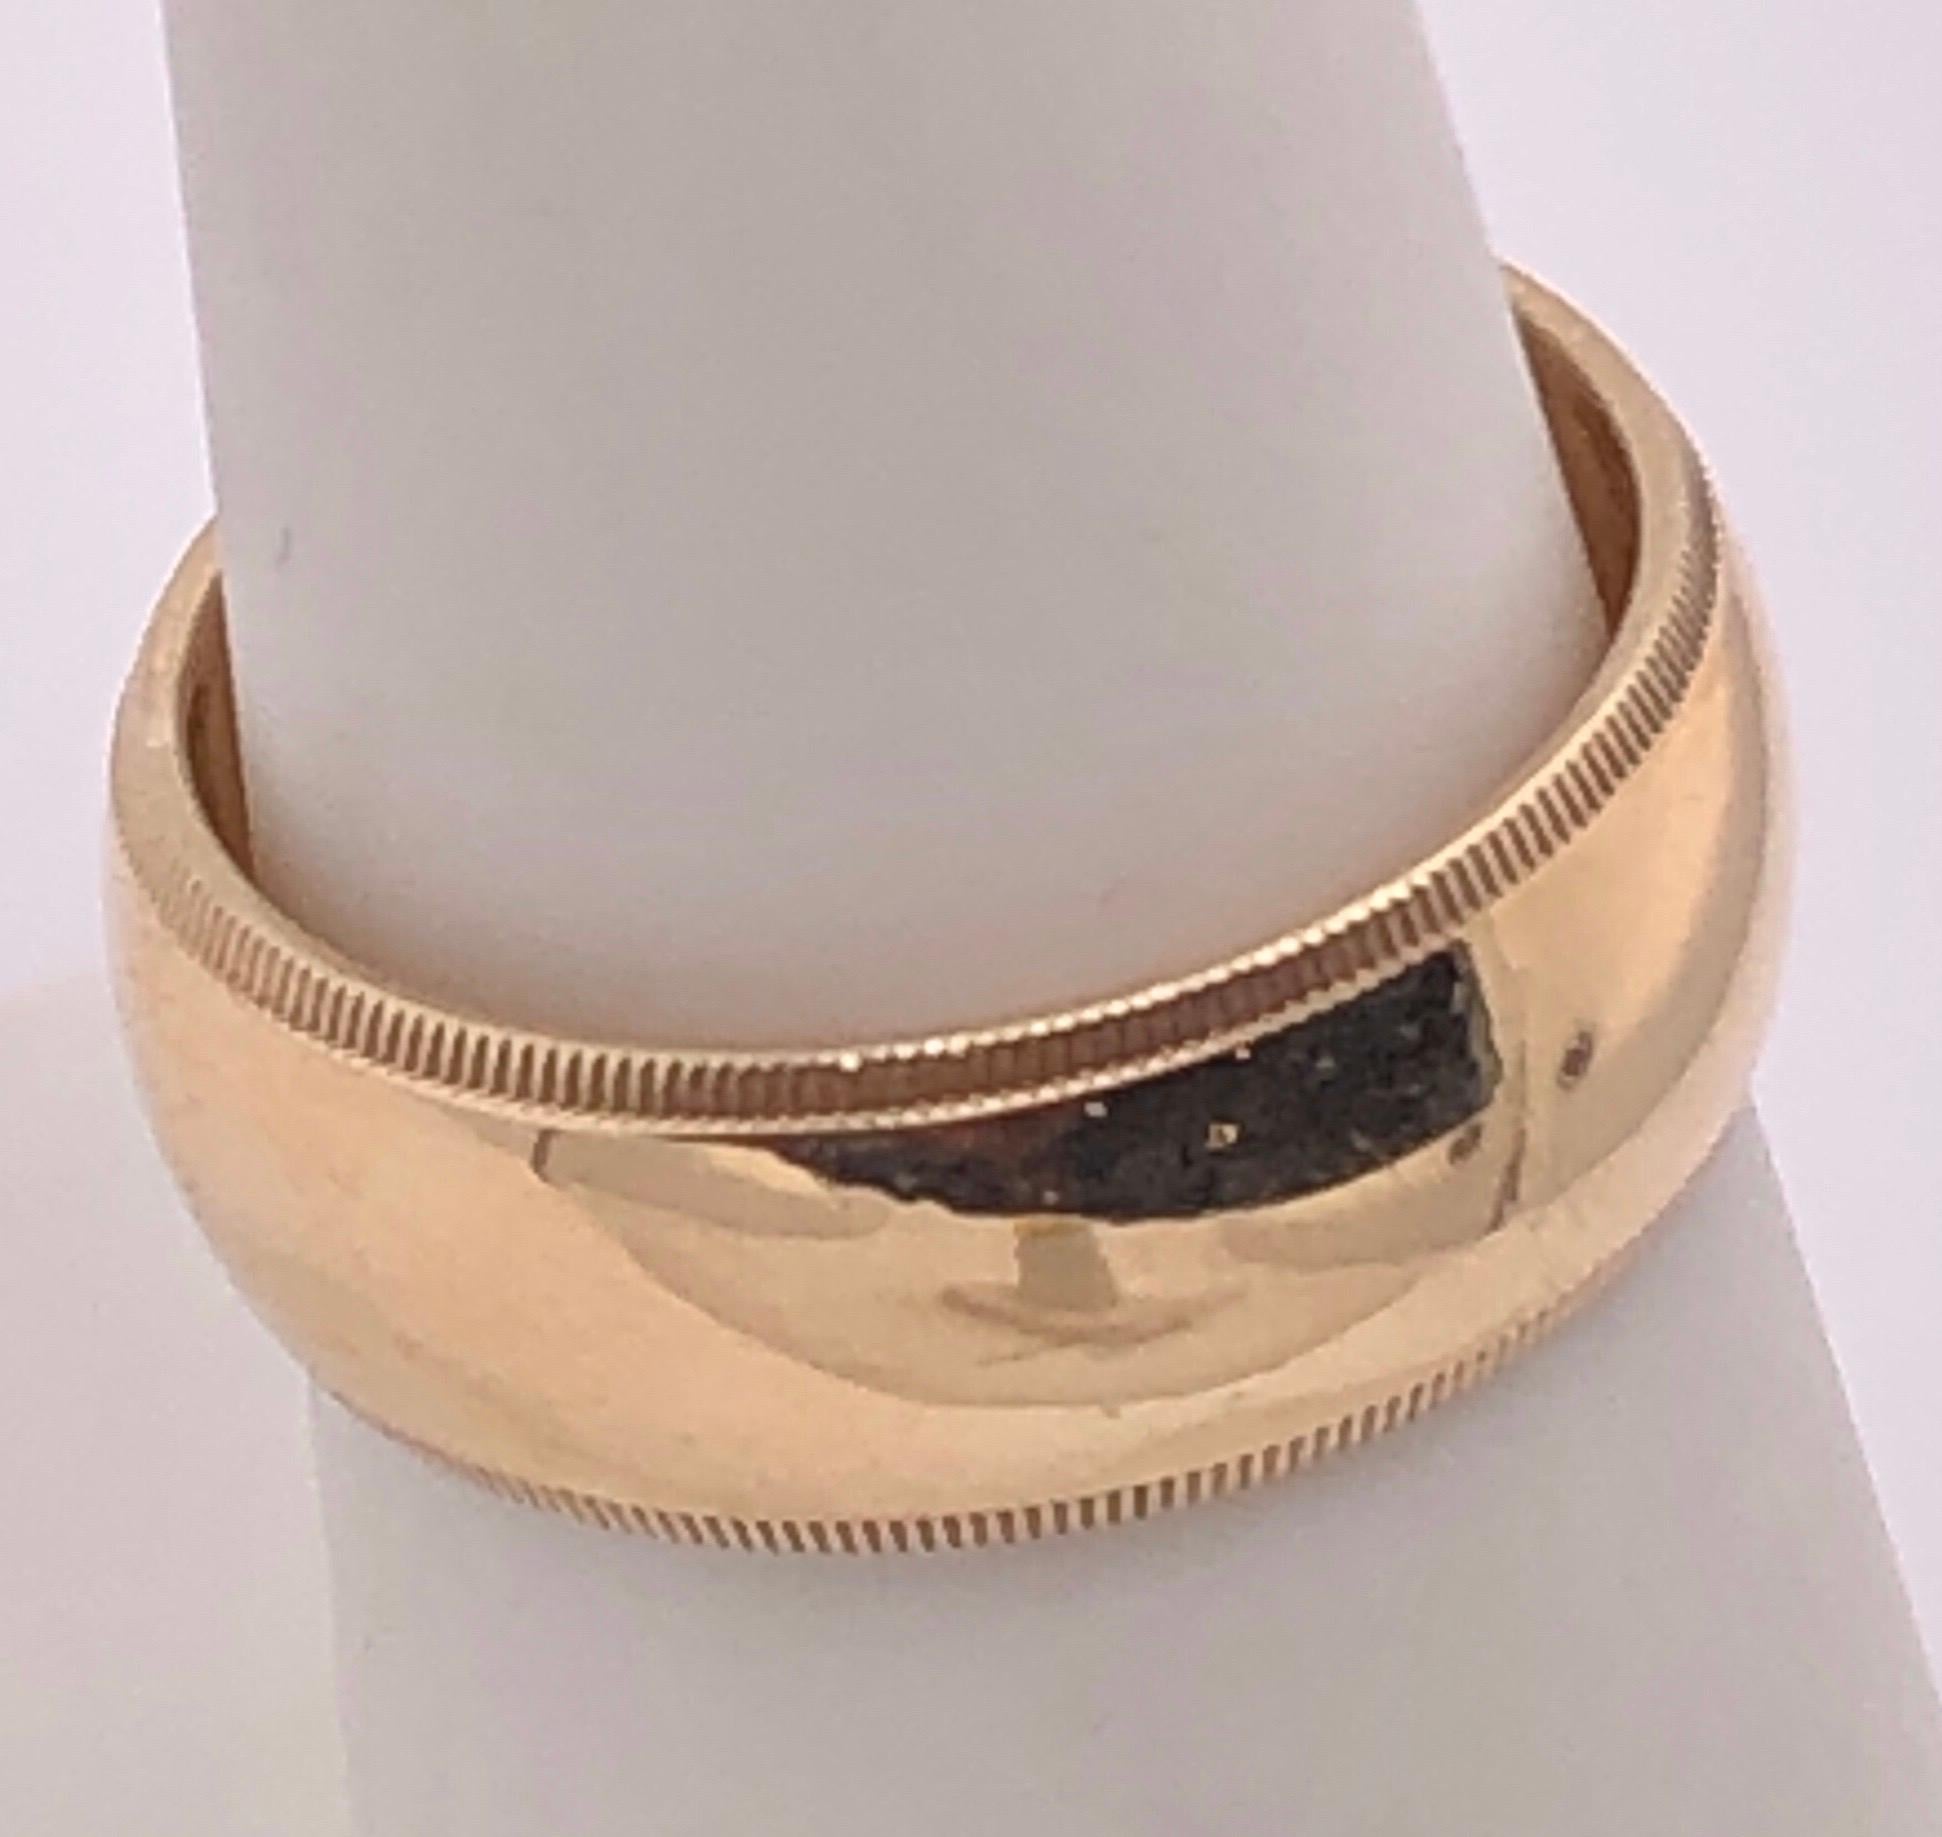 14 Karat Yellow Gold Wedding Ring/Band Size 6.5.
6.36 grams total weight.